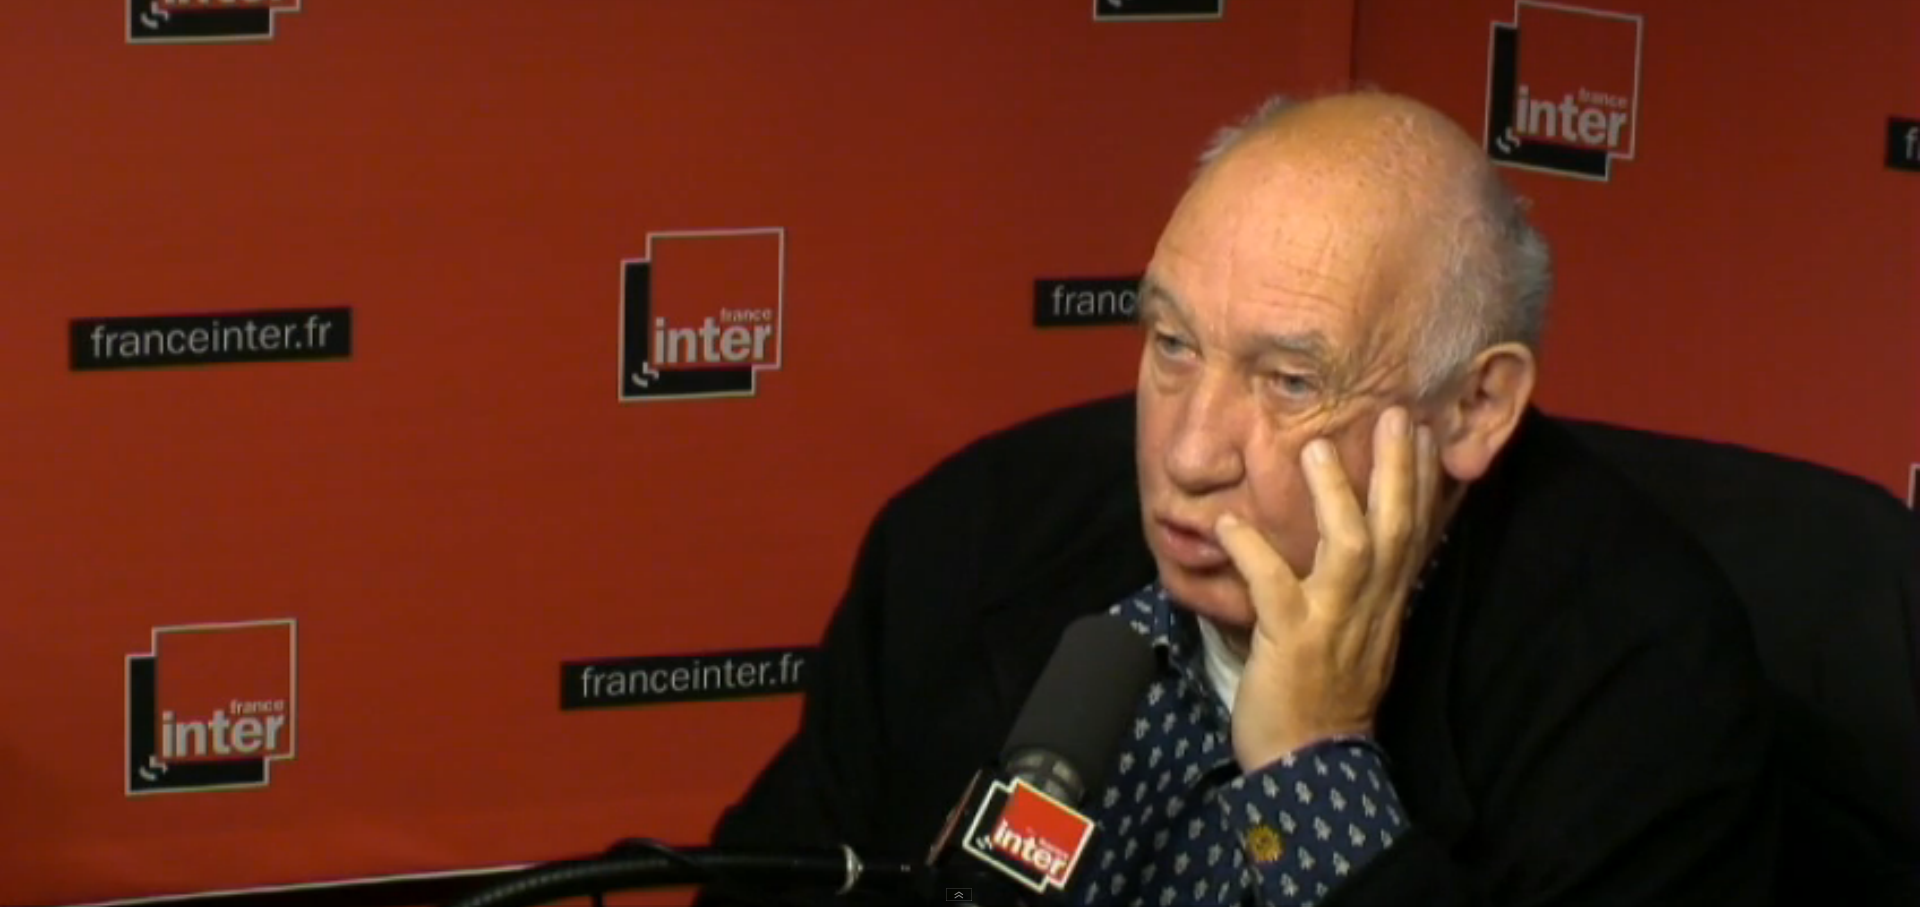 Raymond Depardon, le 31 Décembre 2014 sur France Inter (via)